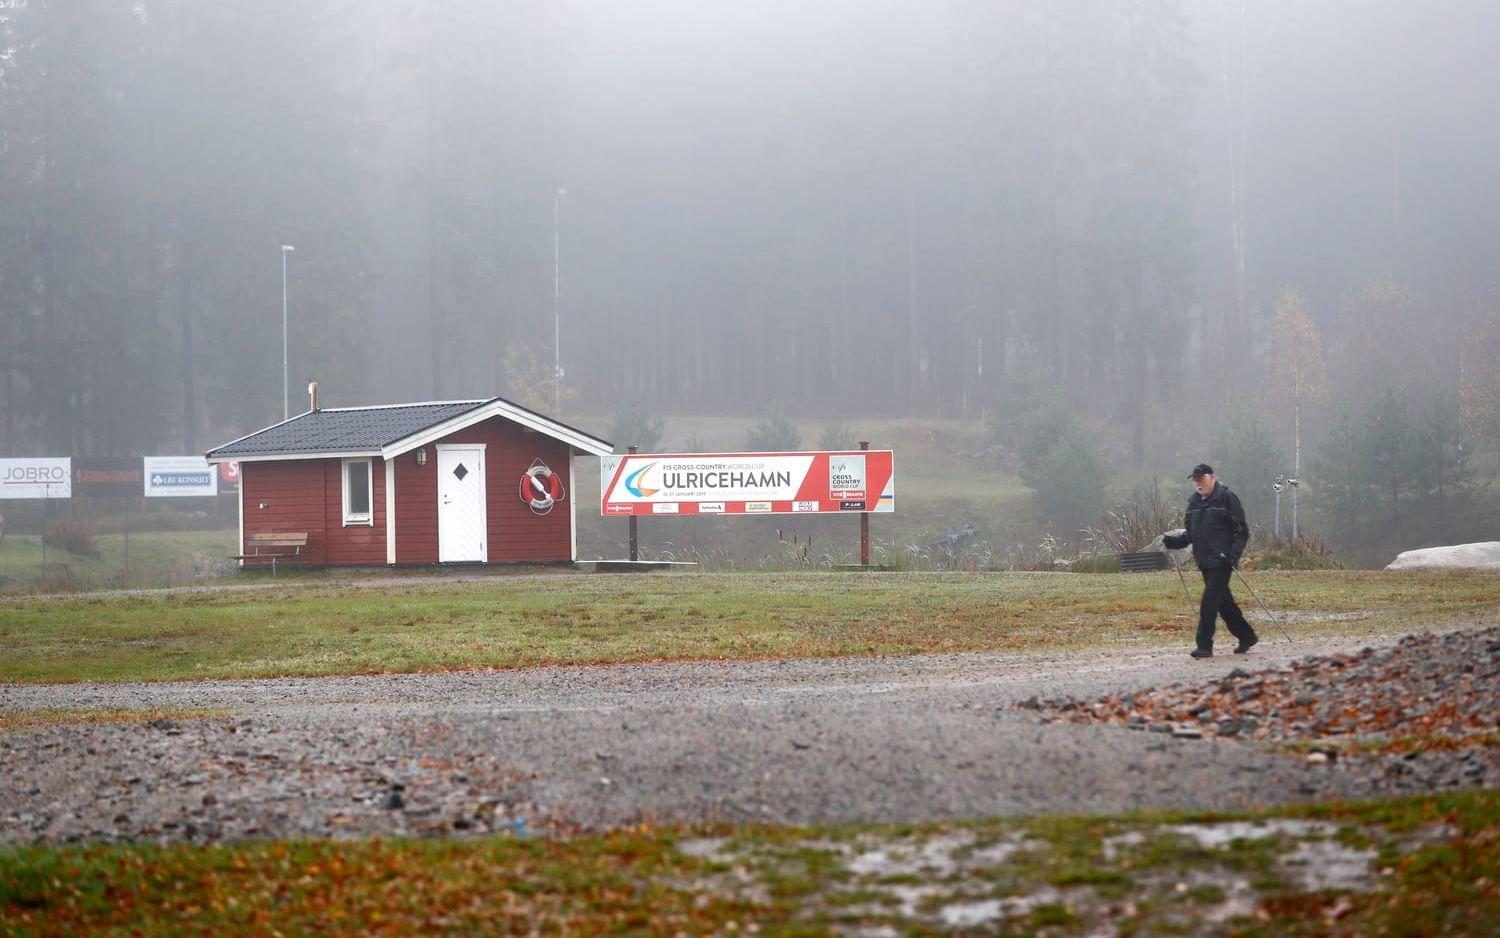 Mordet inträffade i närheten av skidstadion i Ulricehamn. Foto: TT